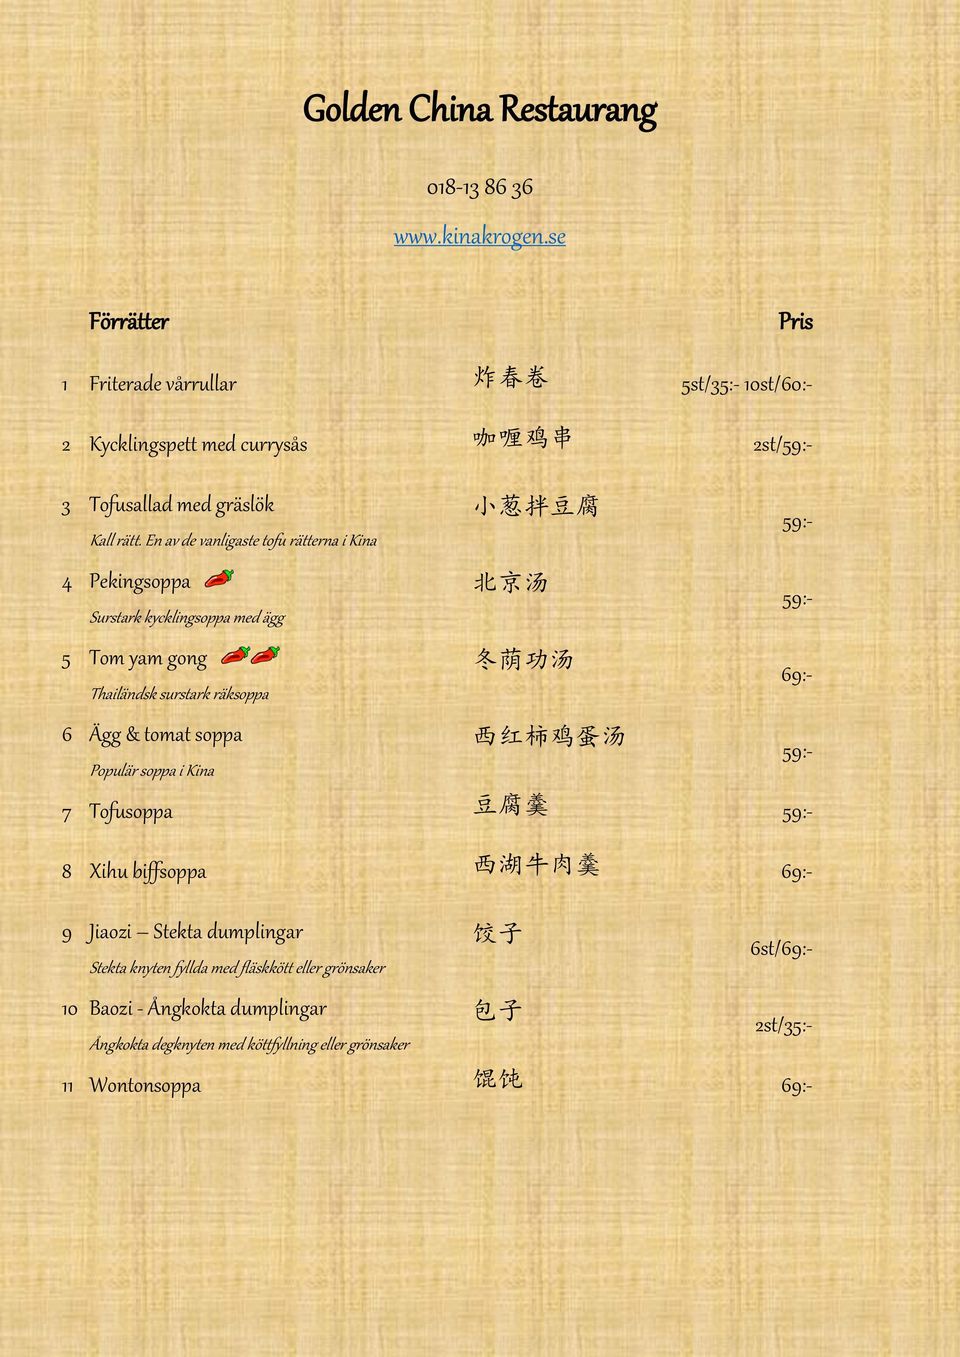 En av de vanligaste tofu rätterna i Kina 4 Pekingsoppa 北 京 汤 Surstark kycklingsoppa med ägg 5 Tom yam gong 冬 荫 功 汤 Thailändsk surstark räksoppa 6 Ägg & tomat soppa 西 红 柿 鸡